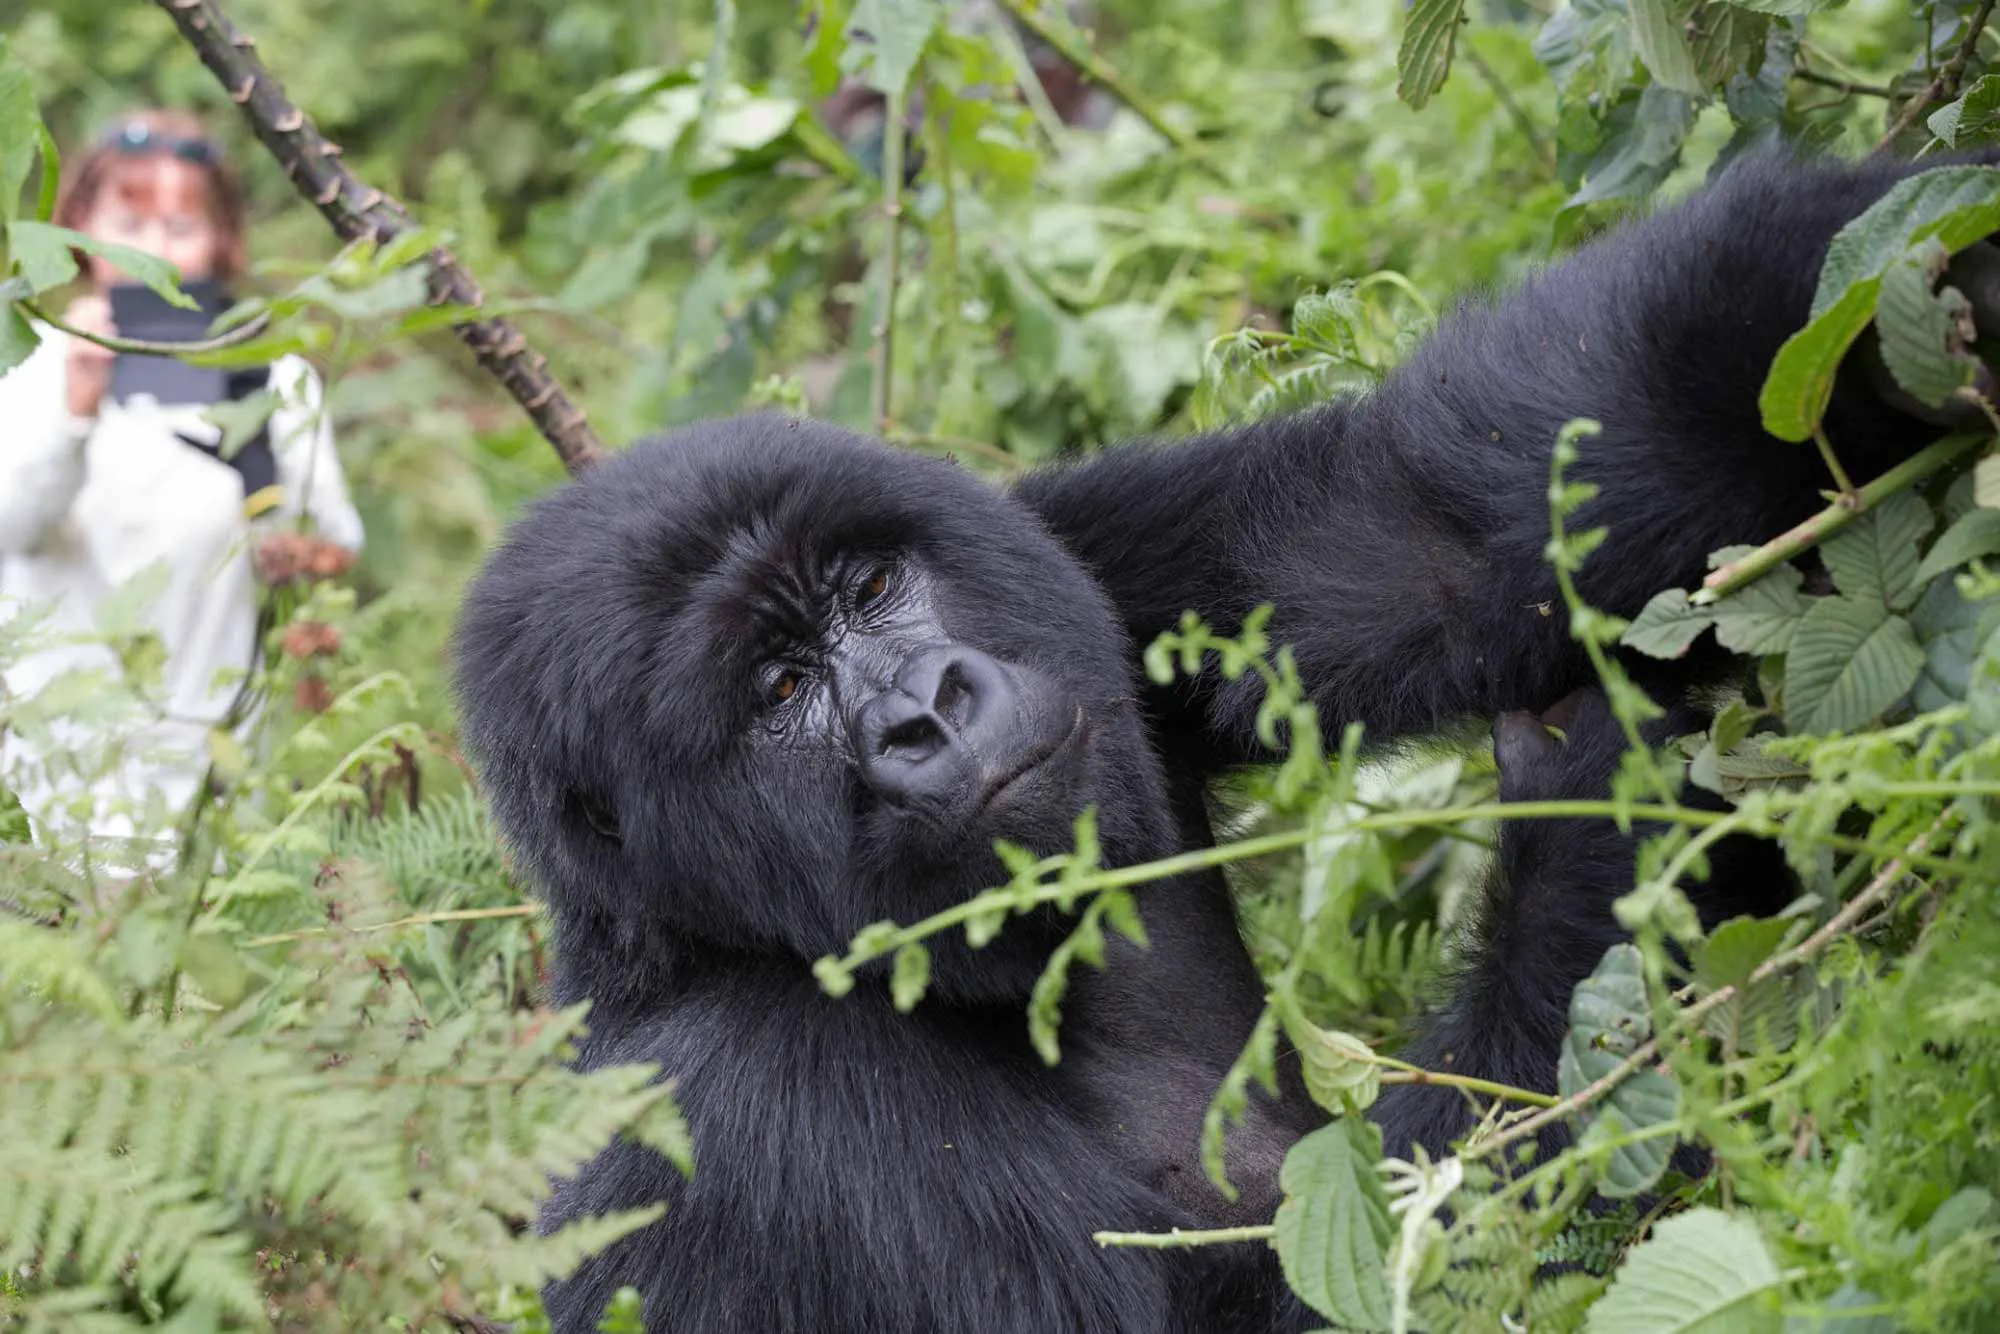 Uganda seeing gorillas